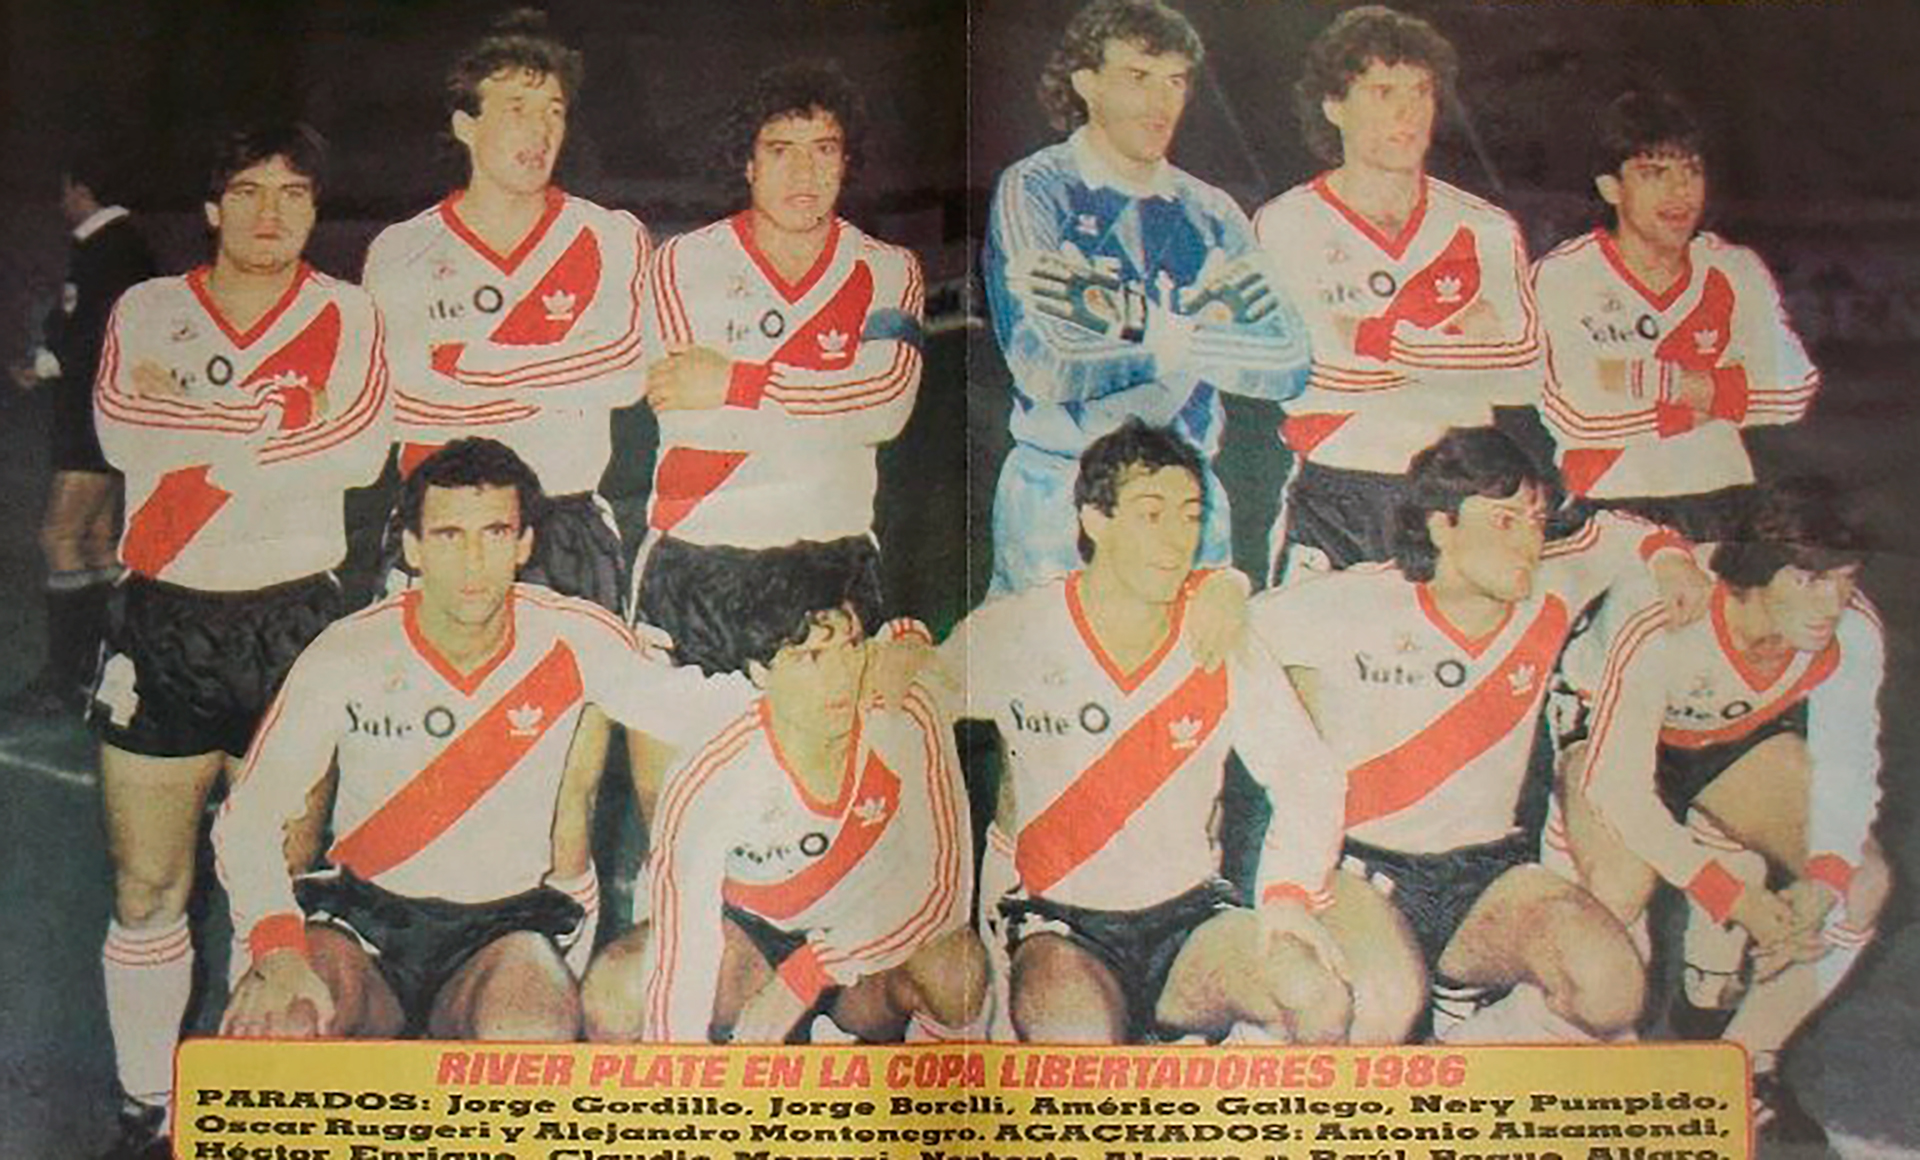 River ganó su primera Copa Libertadores en 1986. En ese plantel sobresalían futbolistas como Nery Pumpido, Oscar Ruggeri, Héctor Enrique, Américo Rubén Gallego, Beto Alonso, Antonio Alzamendi o Juan Gilberto Funes.